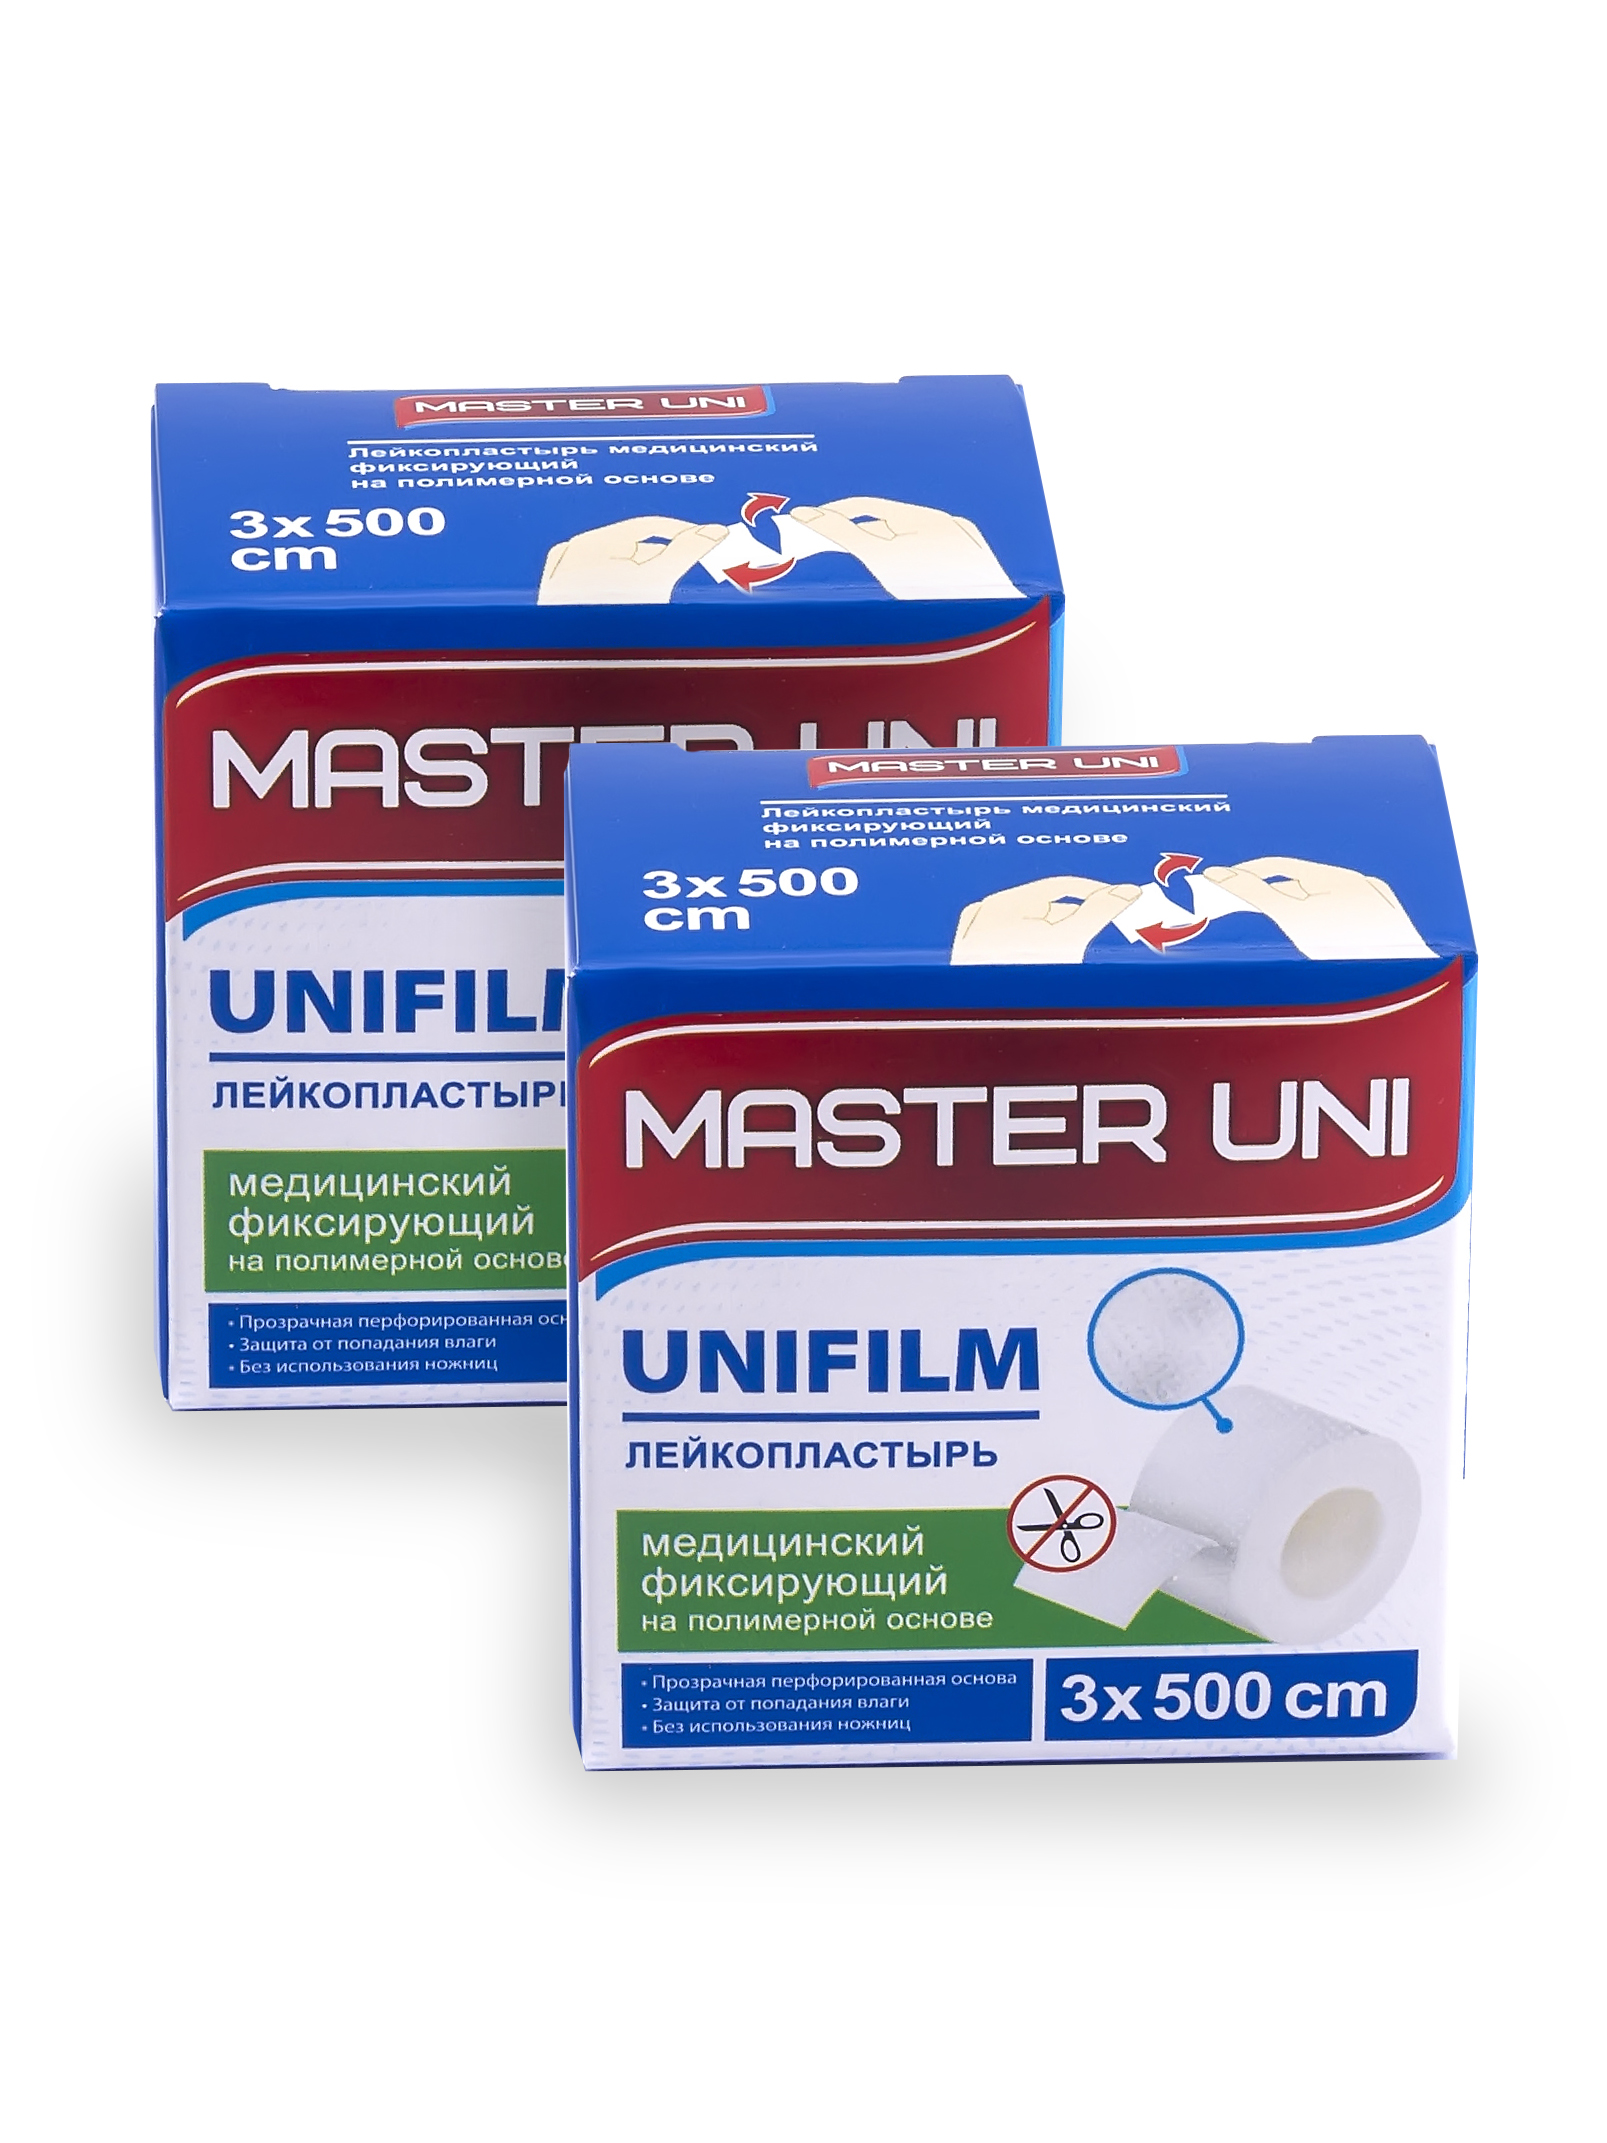 Купить MASTER UNI UNIFILM Лейкопластырь 3 х 500 см на полимерной основе 1+1, Лейкопластырь MASTER UNI UNIFILM 3 х 500 см на полимерной основе 1+1